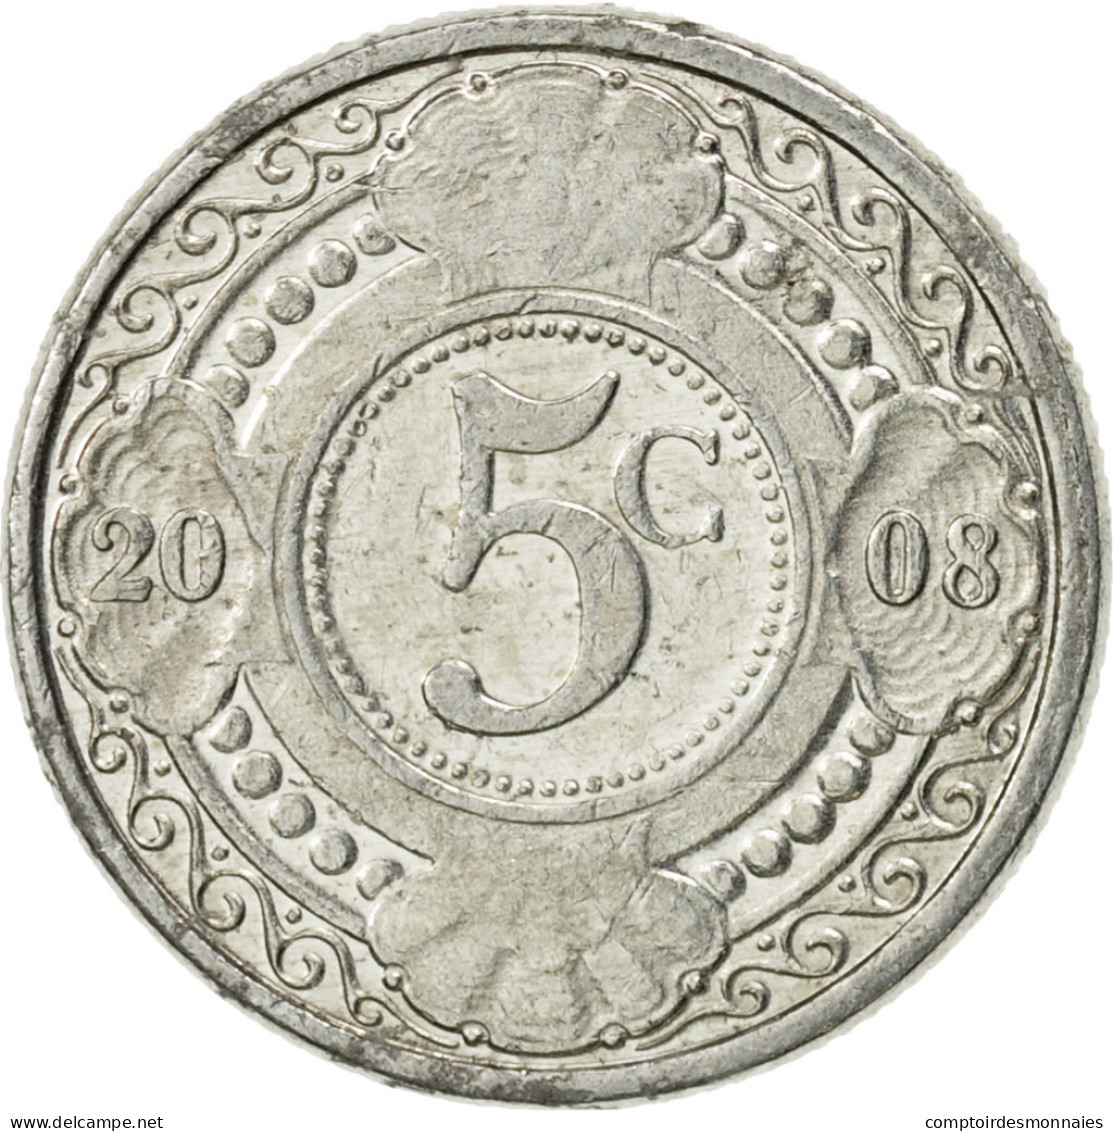 Monnaie, Netherlands Antilles, Beatrix, 5 Cents, 2008, SUP, Aluminium, KM:33 - Antilles Neérlandaises